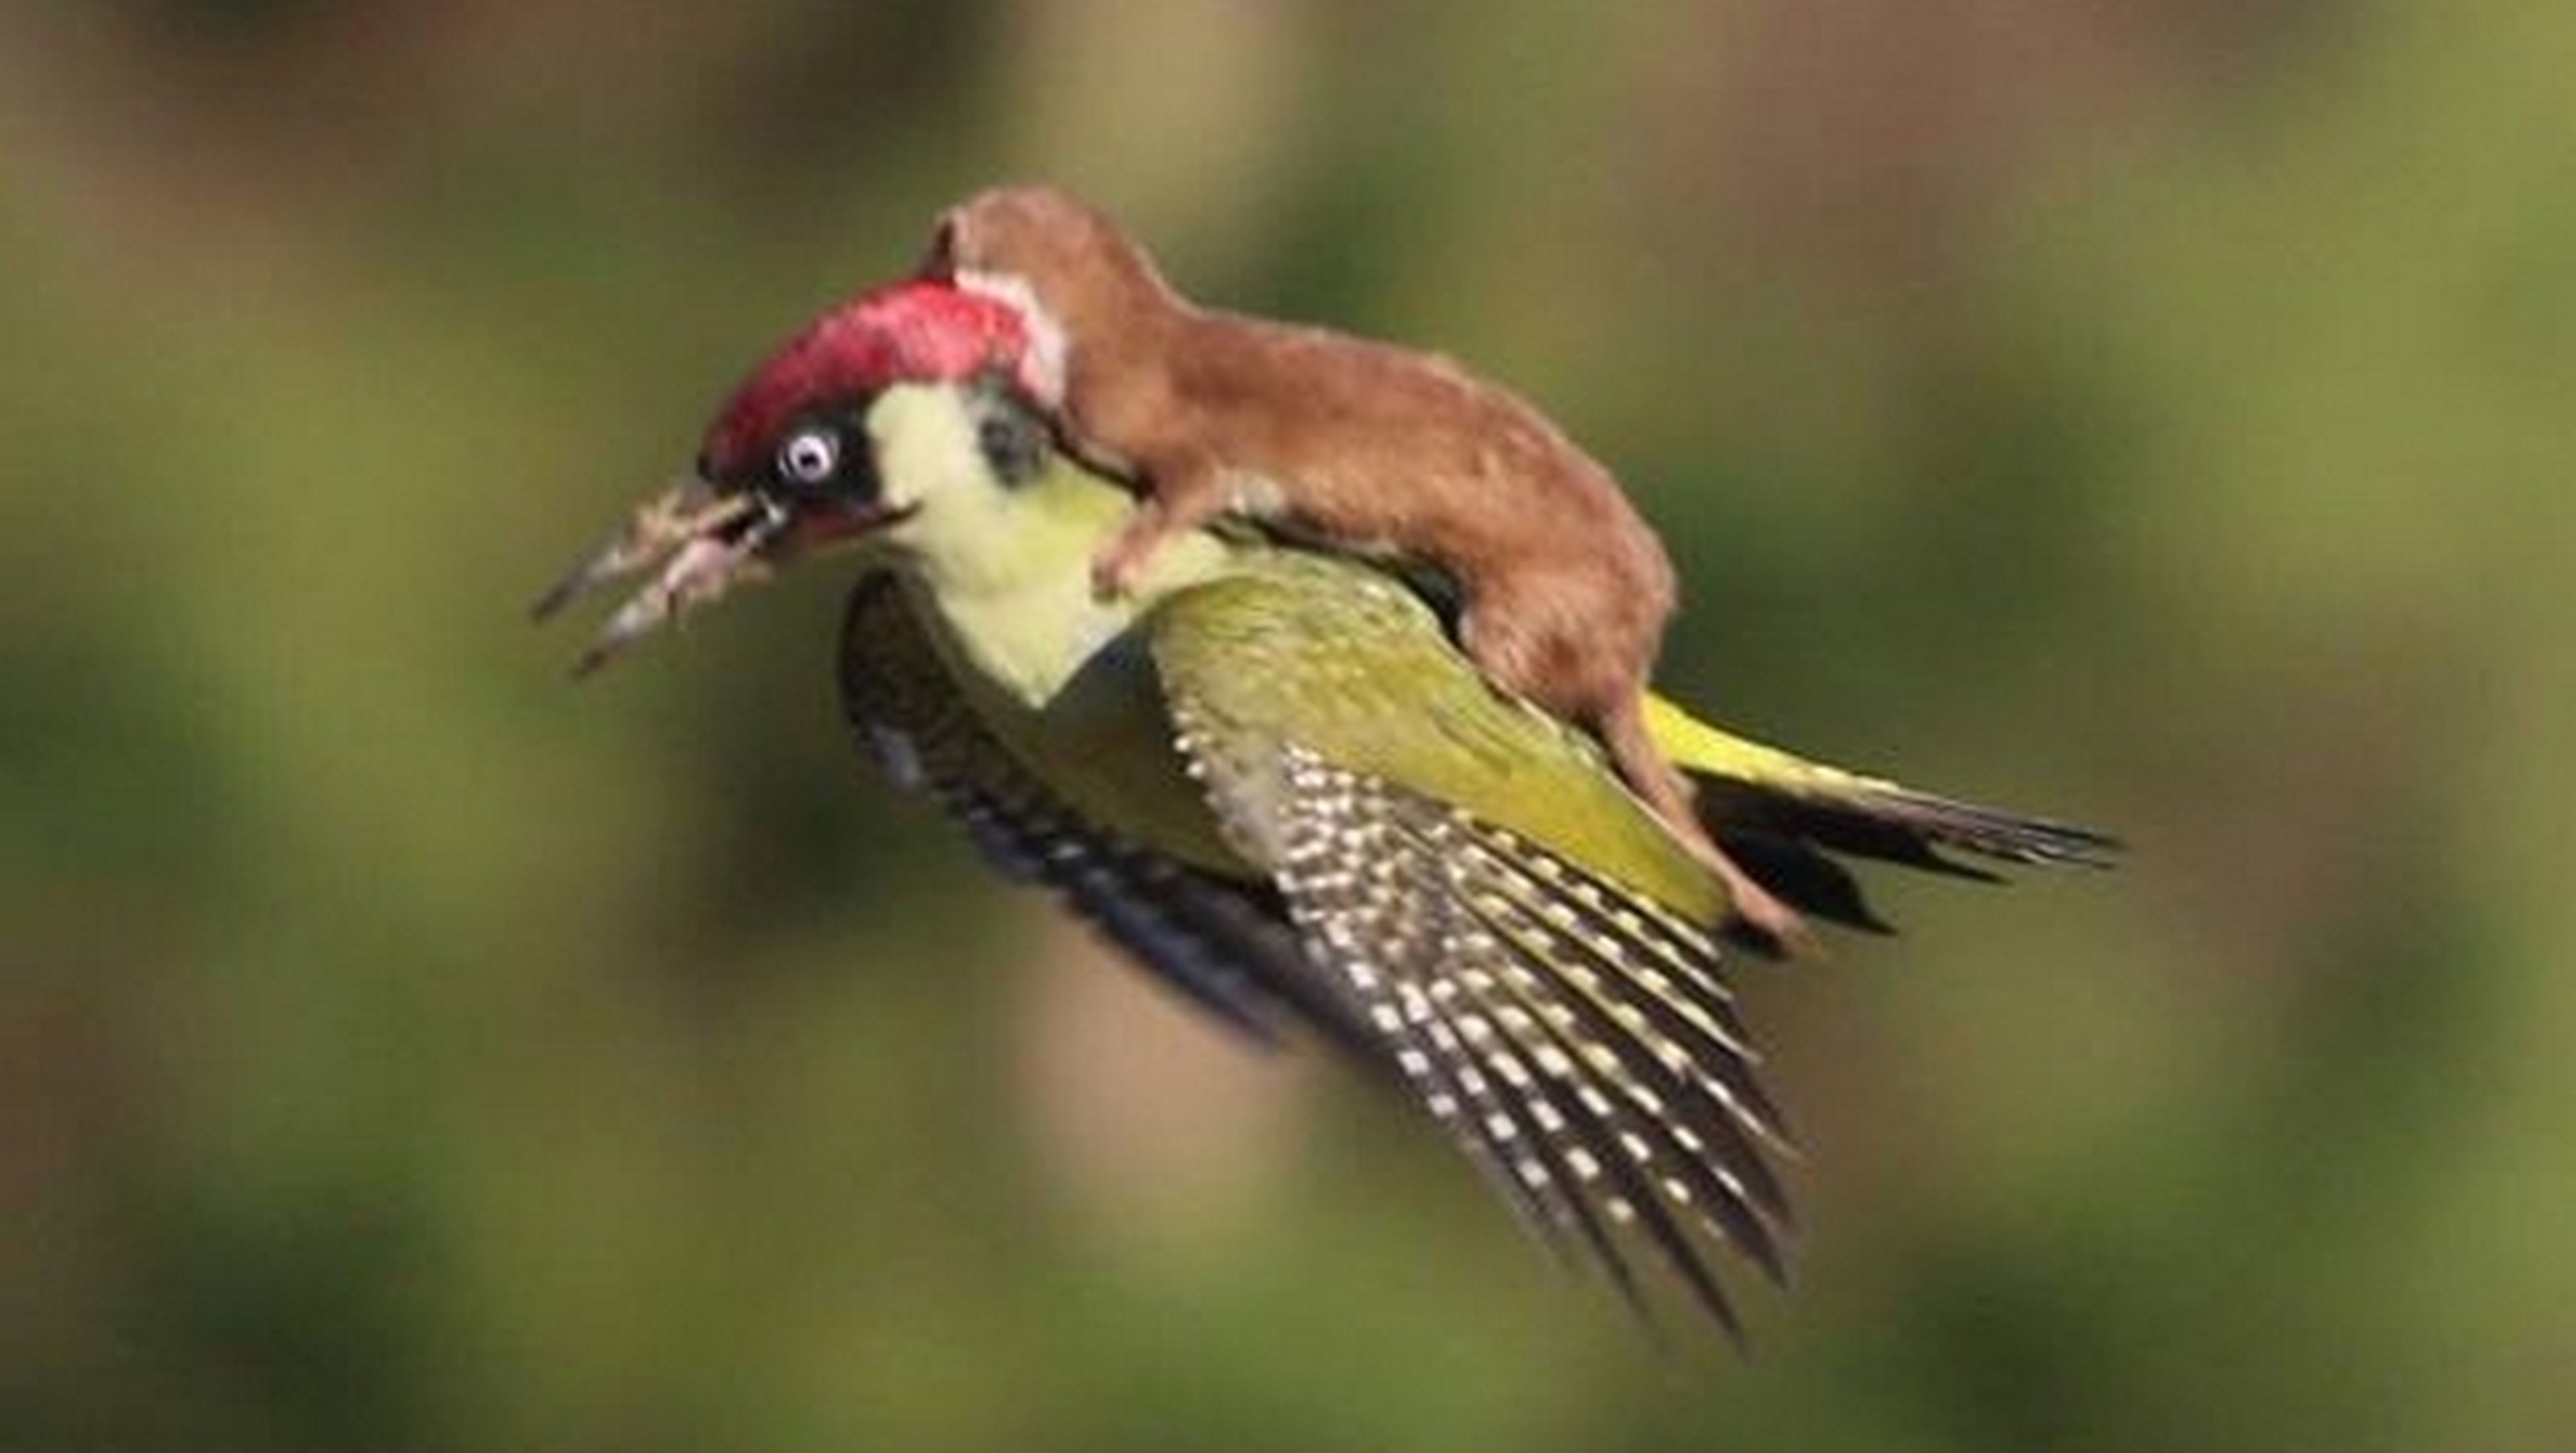 La foto de una comadreja que vuela montada en un pájaro se hace viral. ¿Qué ocurre aquí?